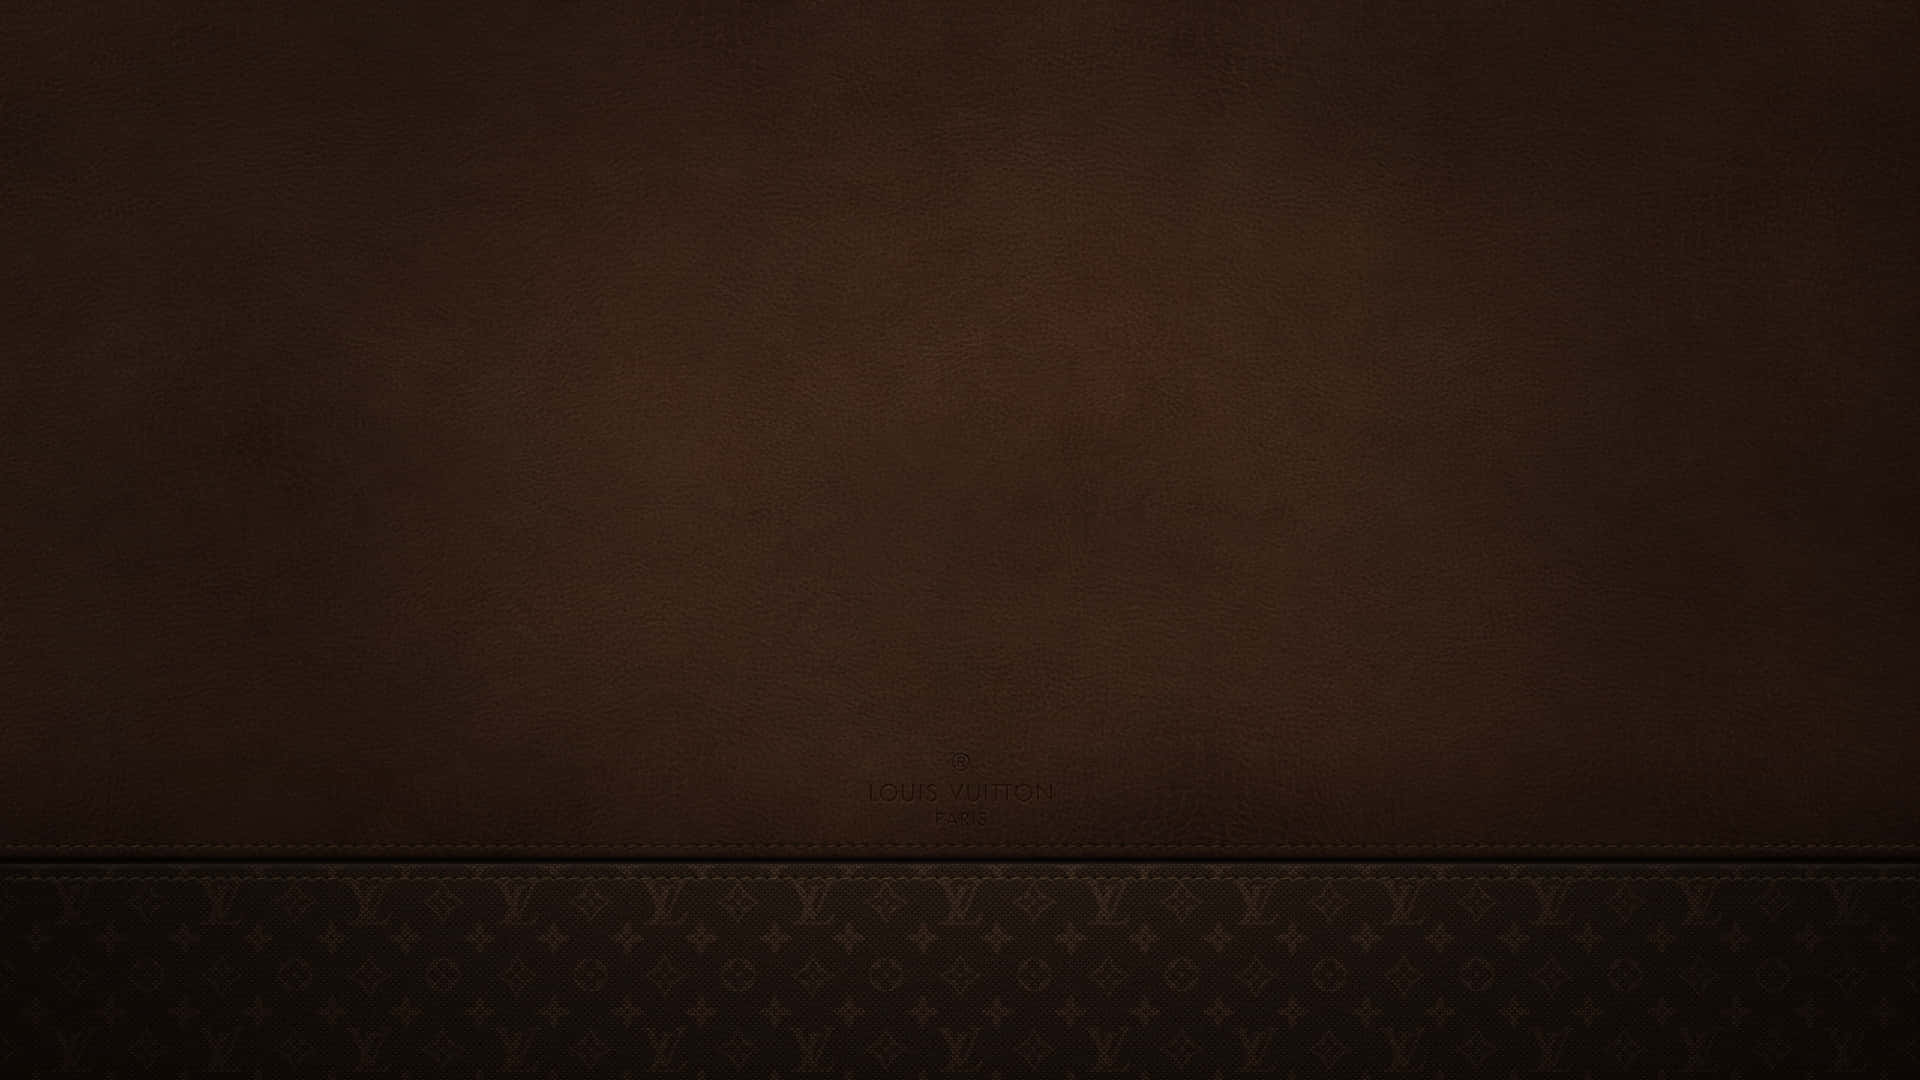 Sentitilusso Con Louis Vuitton In Sorprendente Risoluzione 4k. Sfondo